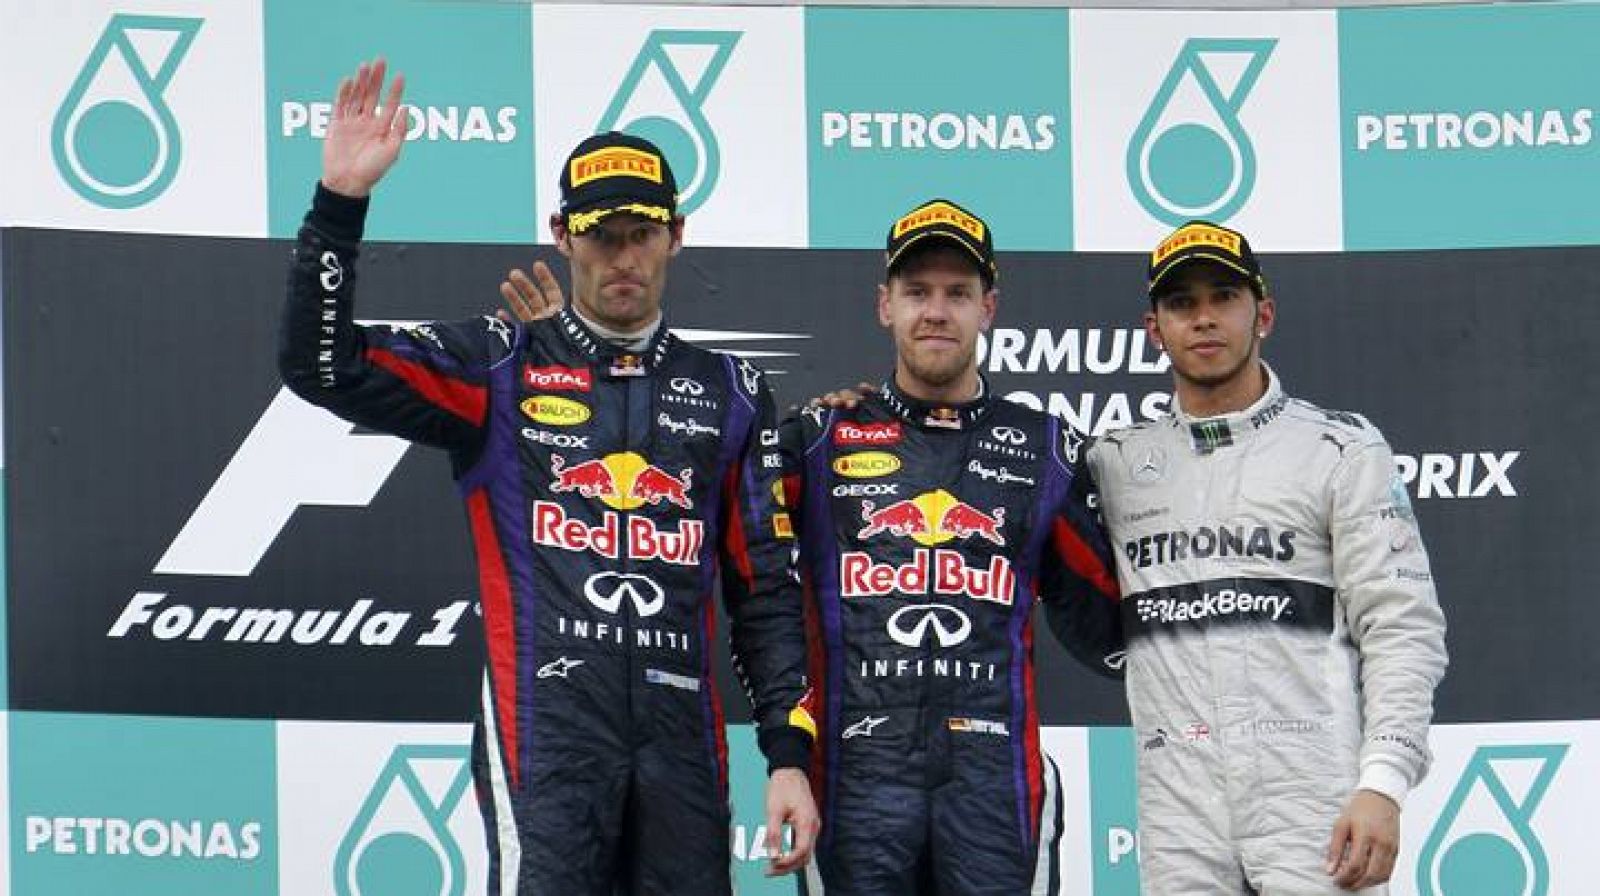 Imagen del podio en Sepang con Vettel, Webber y Hamilton.